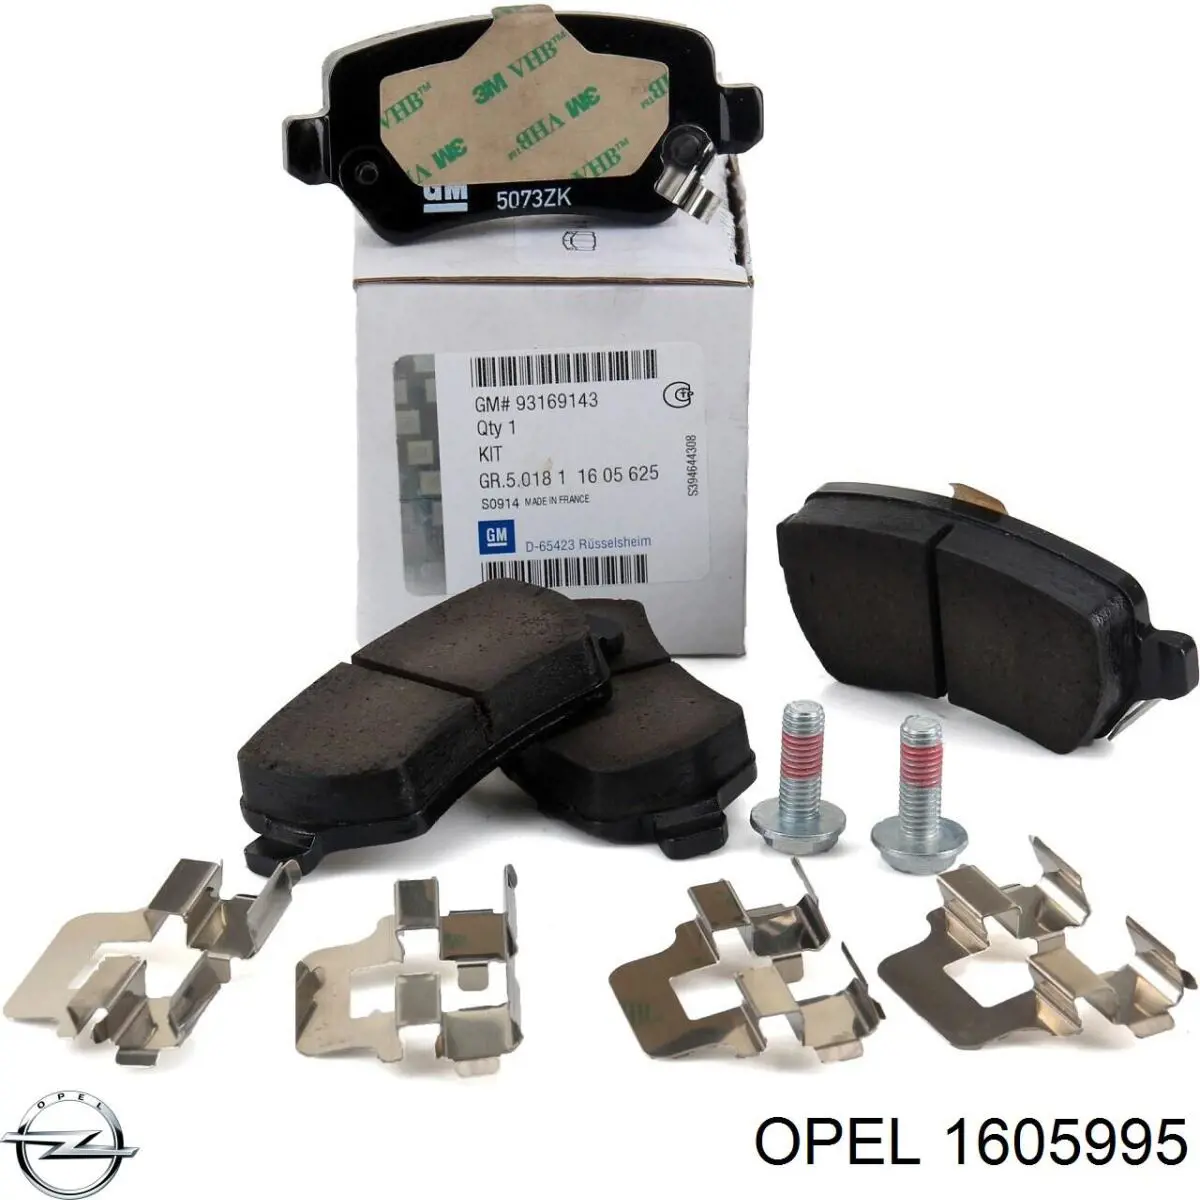 1605995 Opel колодки тормозные задние дисковые